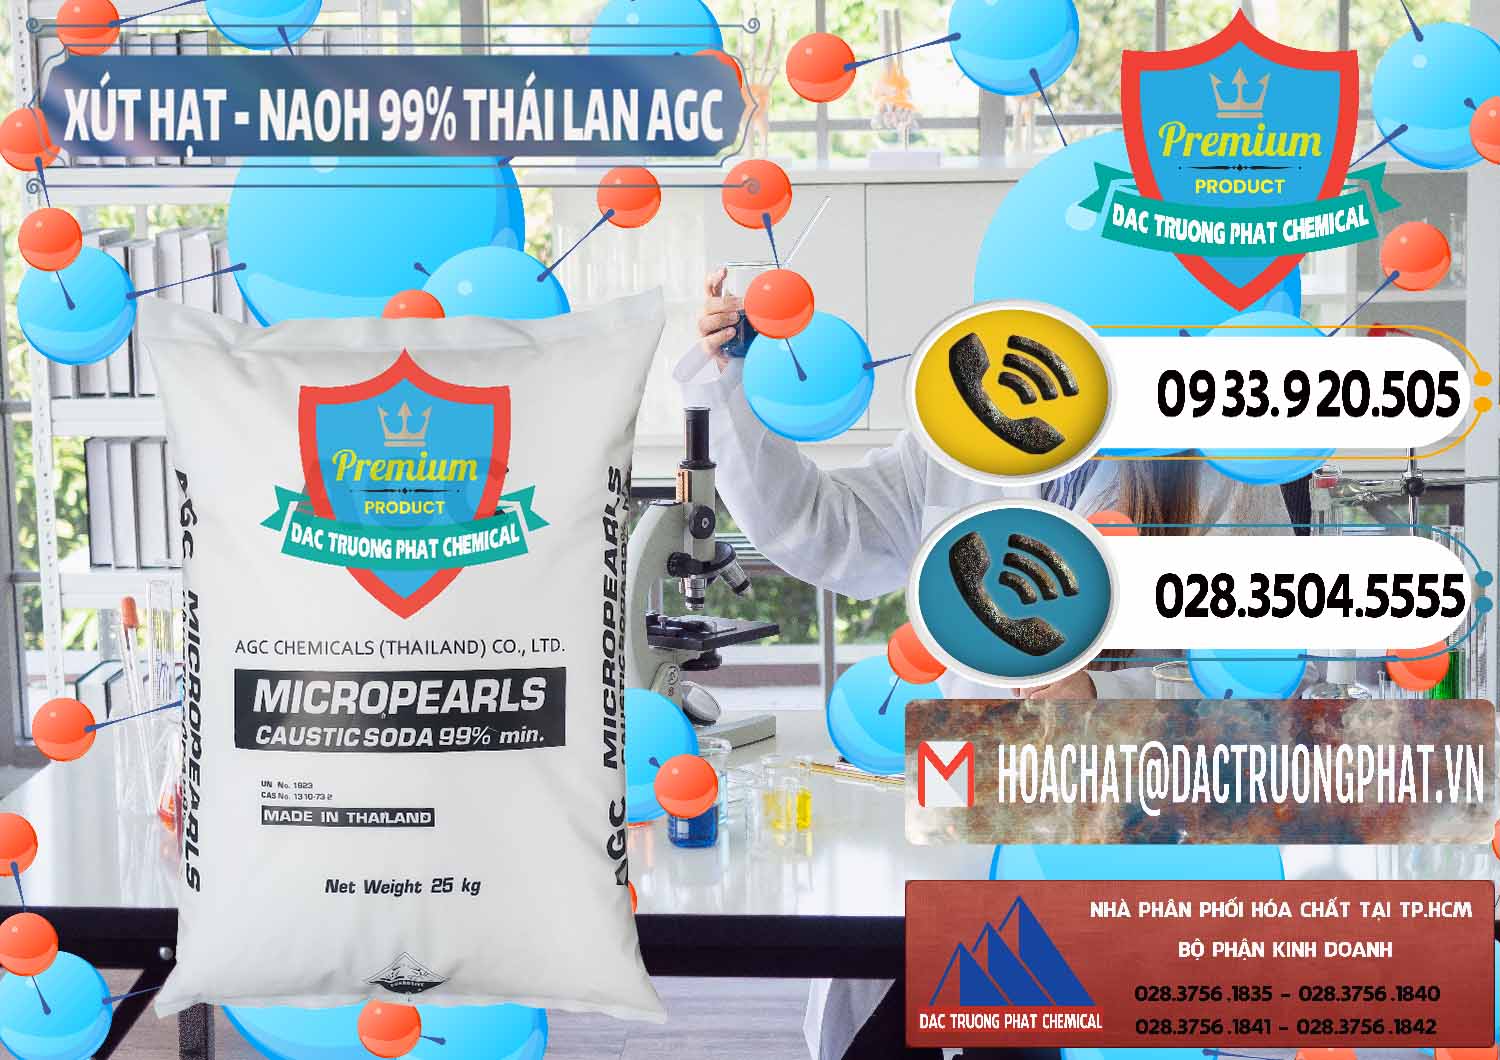 Công ty bán ( cung cấp ) Xút Hạt - NaOH Bột 99% AGC Thái Lan - 0168 - Công ty chuyên cung ứng _ phân phối hóa chất tại TP.HCM - hoachatdetnhuom.vn